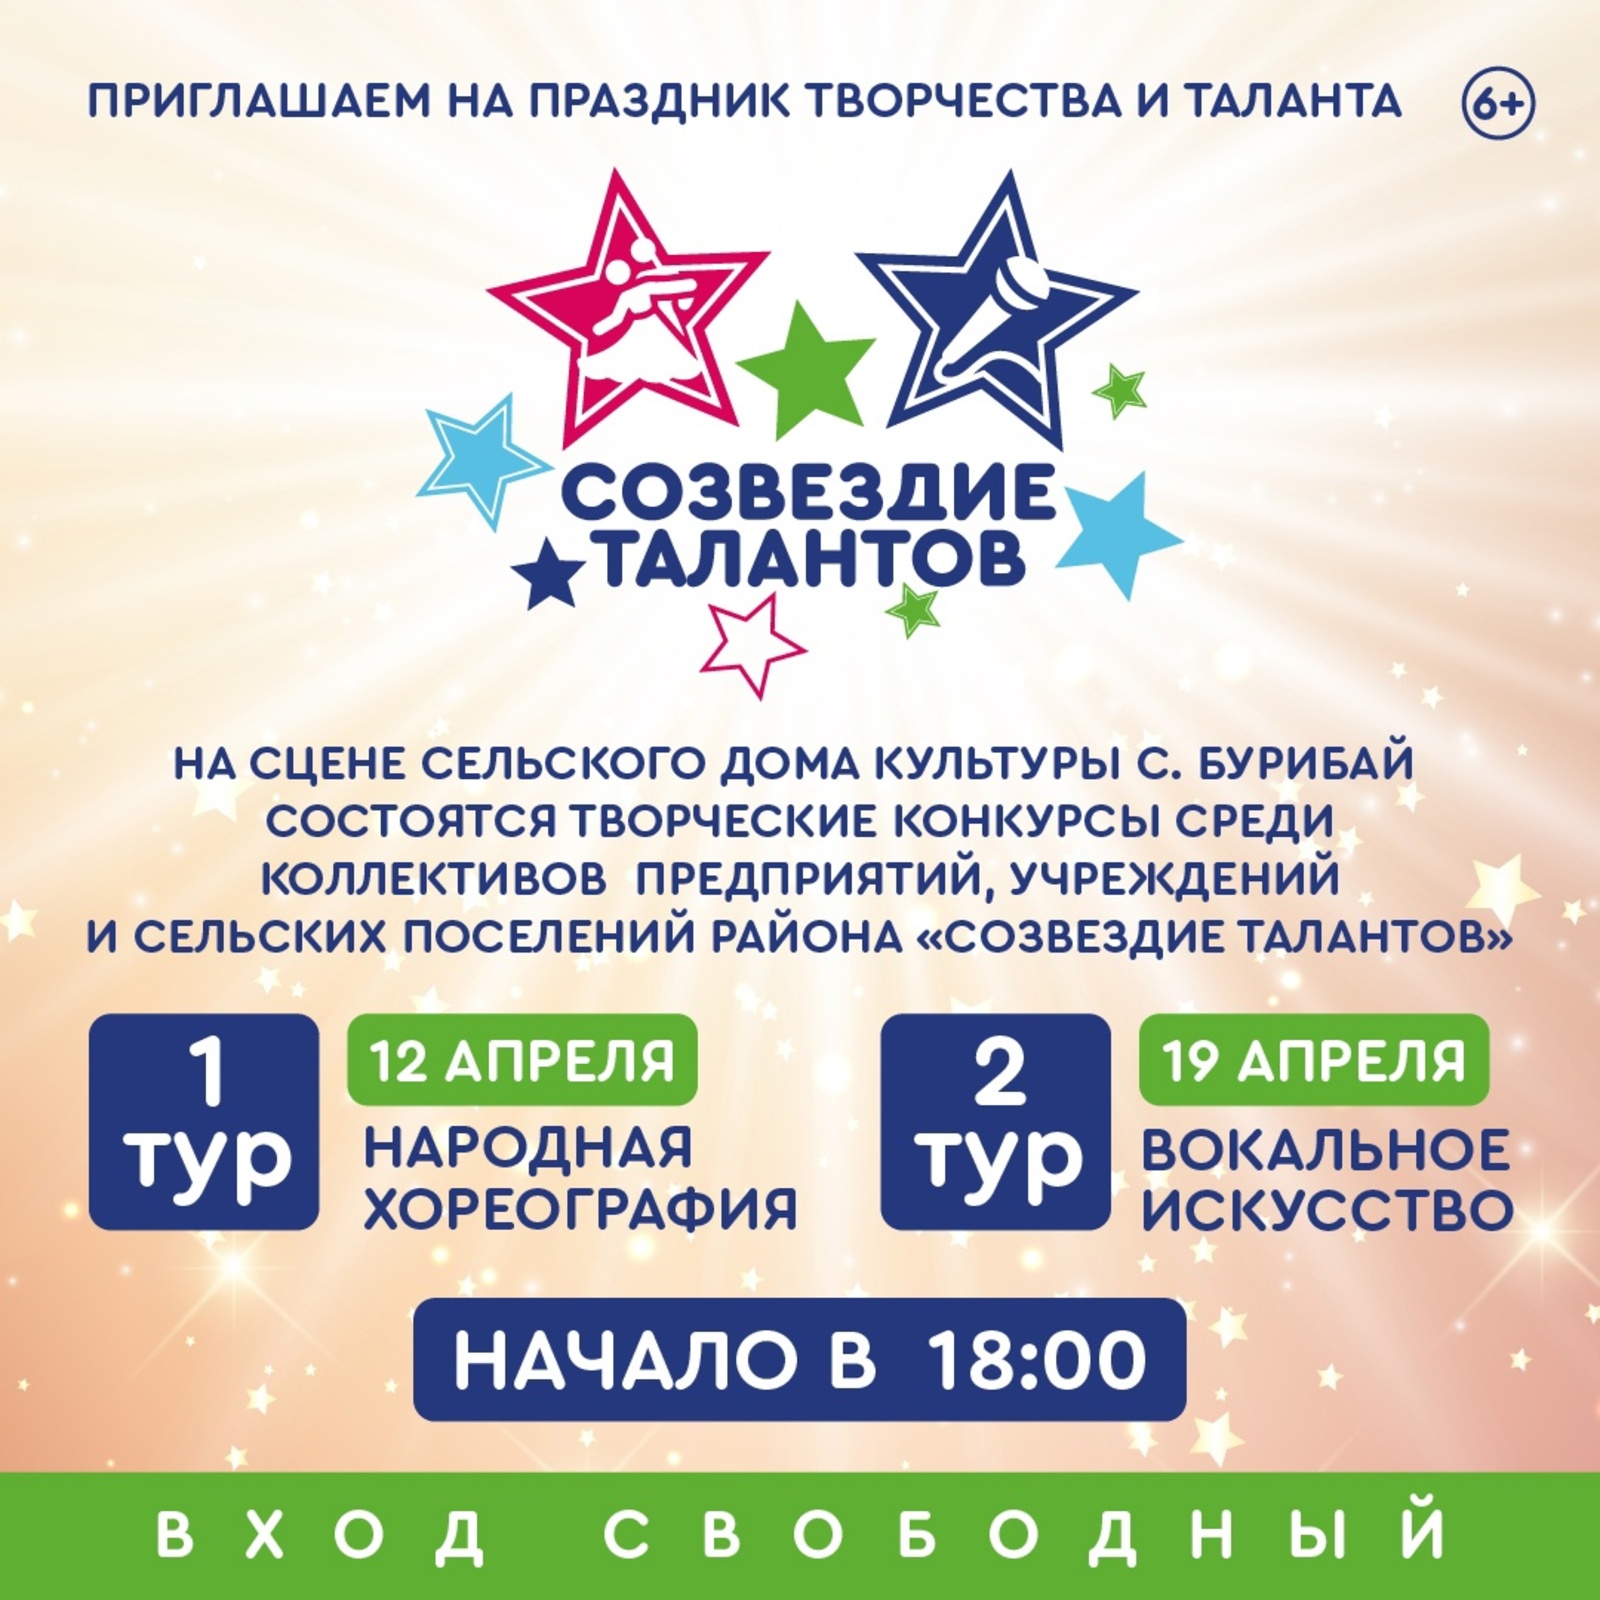 Приглашение на конкурс "Созвездие талантов" среди предприятий, учреждений и организаций района